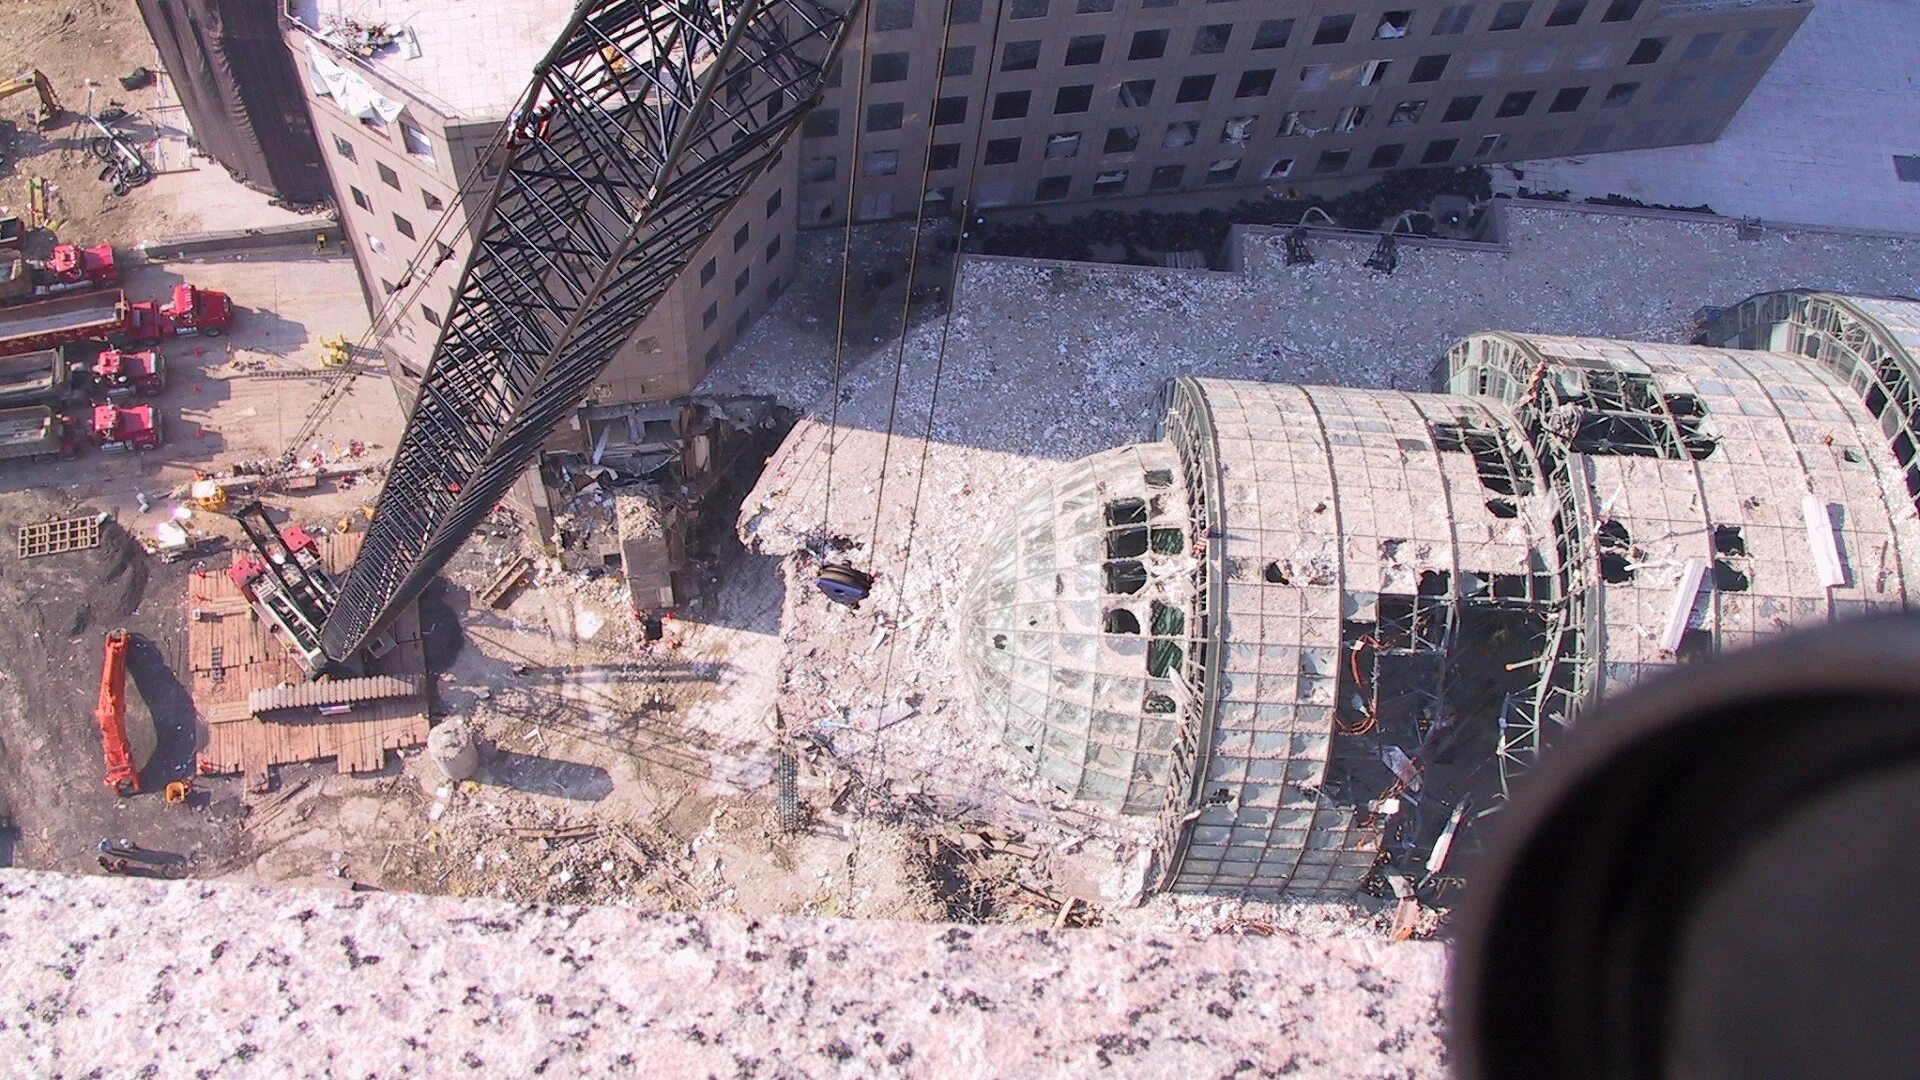 11 сентября сколько погибших 2001 башни. Нью Йорк катастрофа 2001. Башни Близнецы 11 сентября.